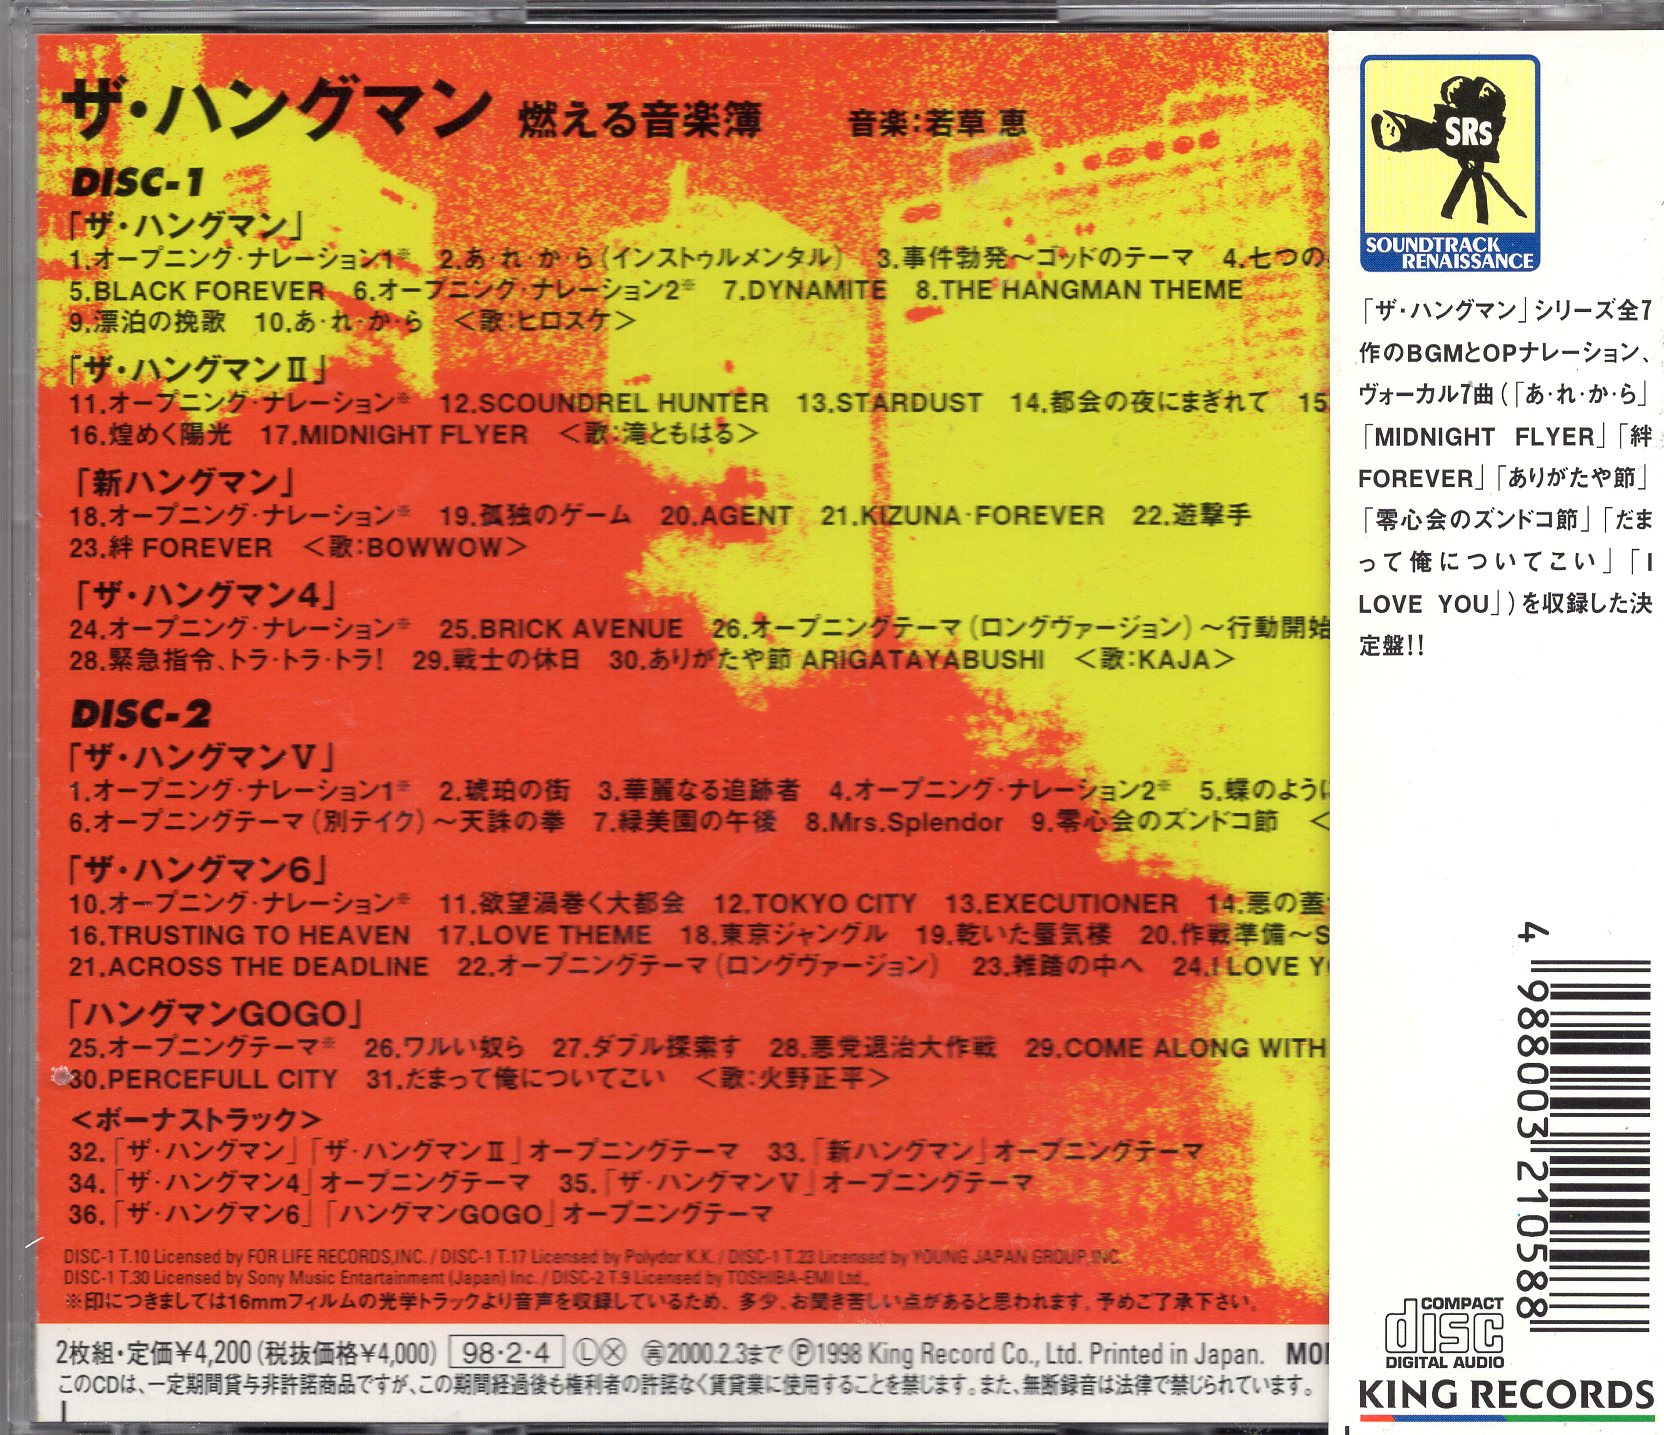 ◇限定Special Price ザ ハングマン 燃える音楽簿 CD 希少 confmax.com.br